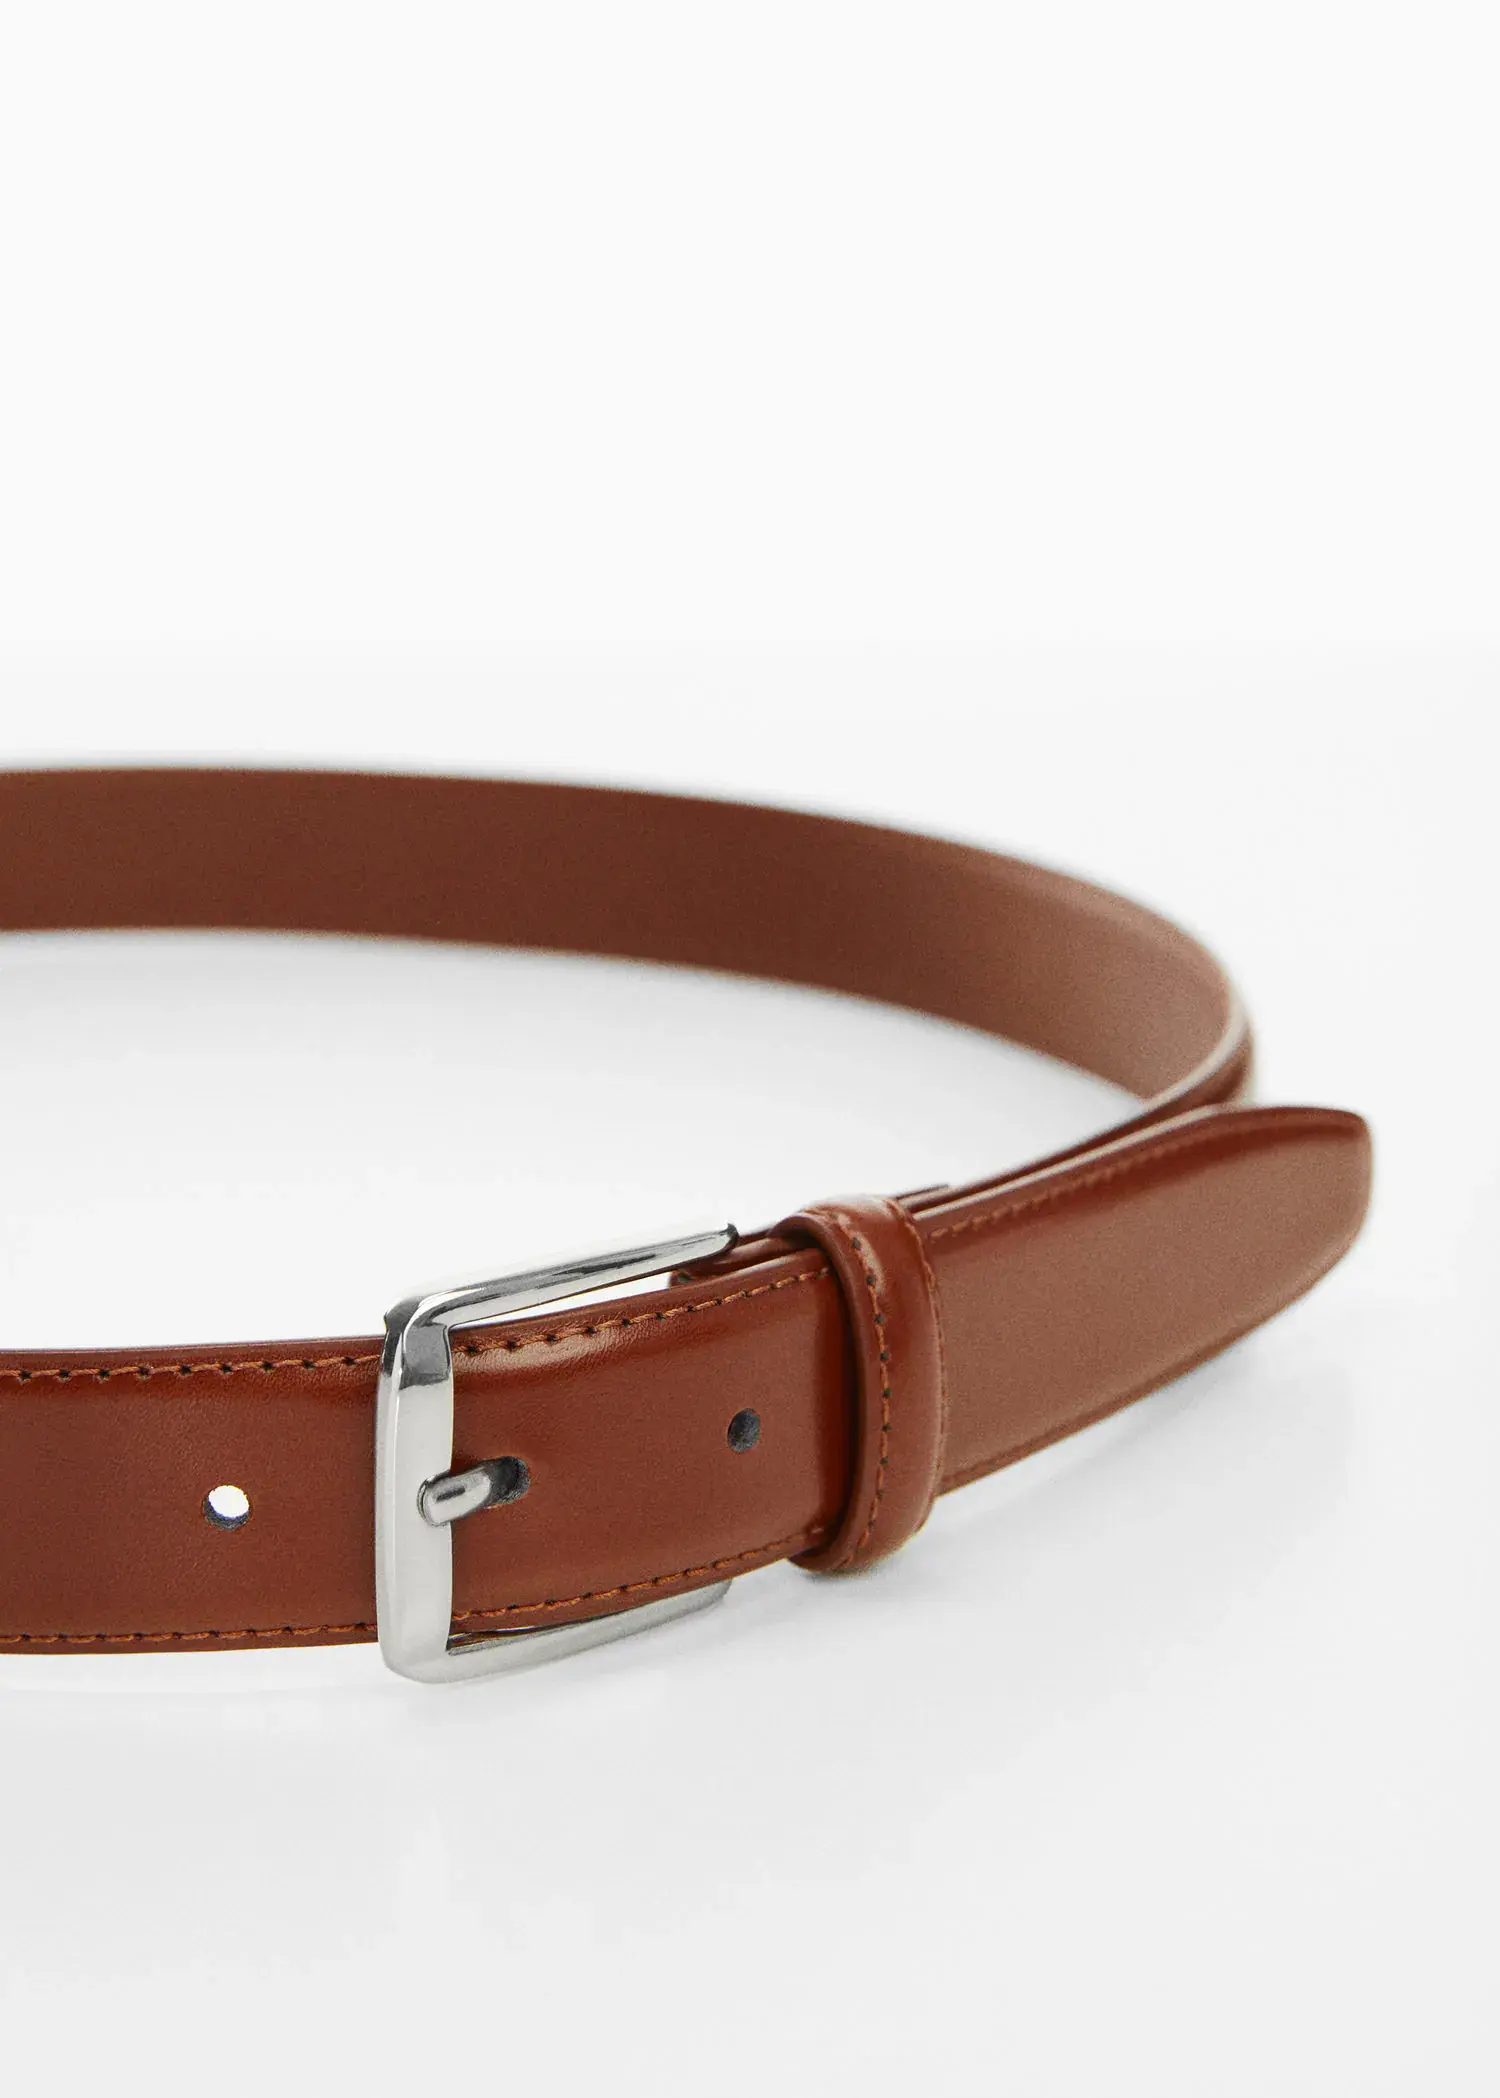 Mango Leather belt. 3